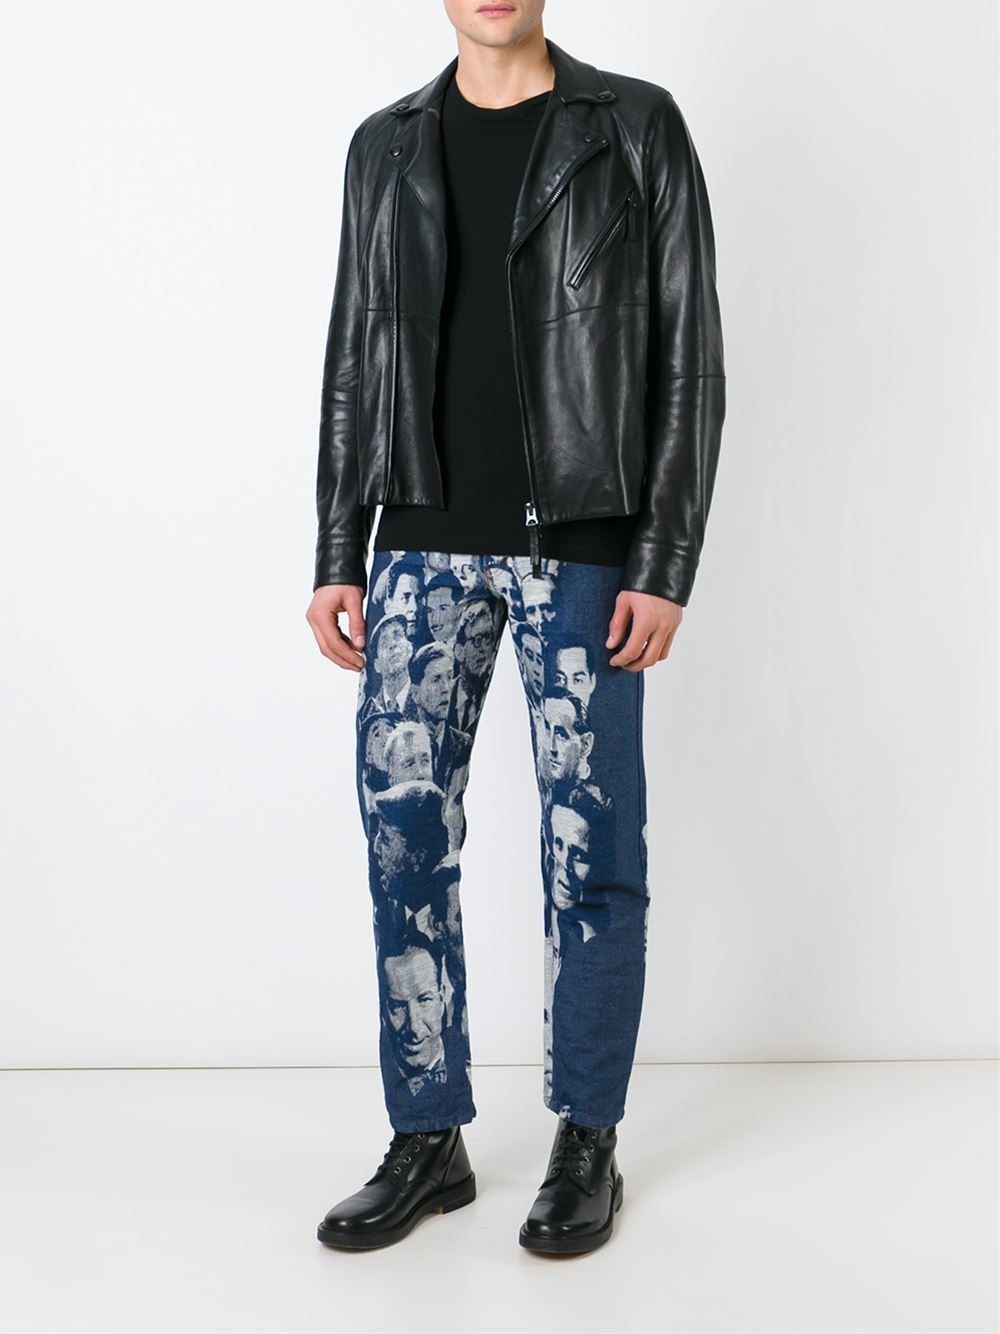 Jean Paul Gaultier Jacquard Face Jeans in Blue | Lyst